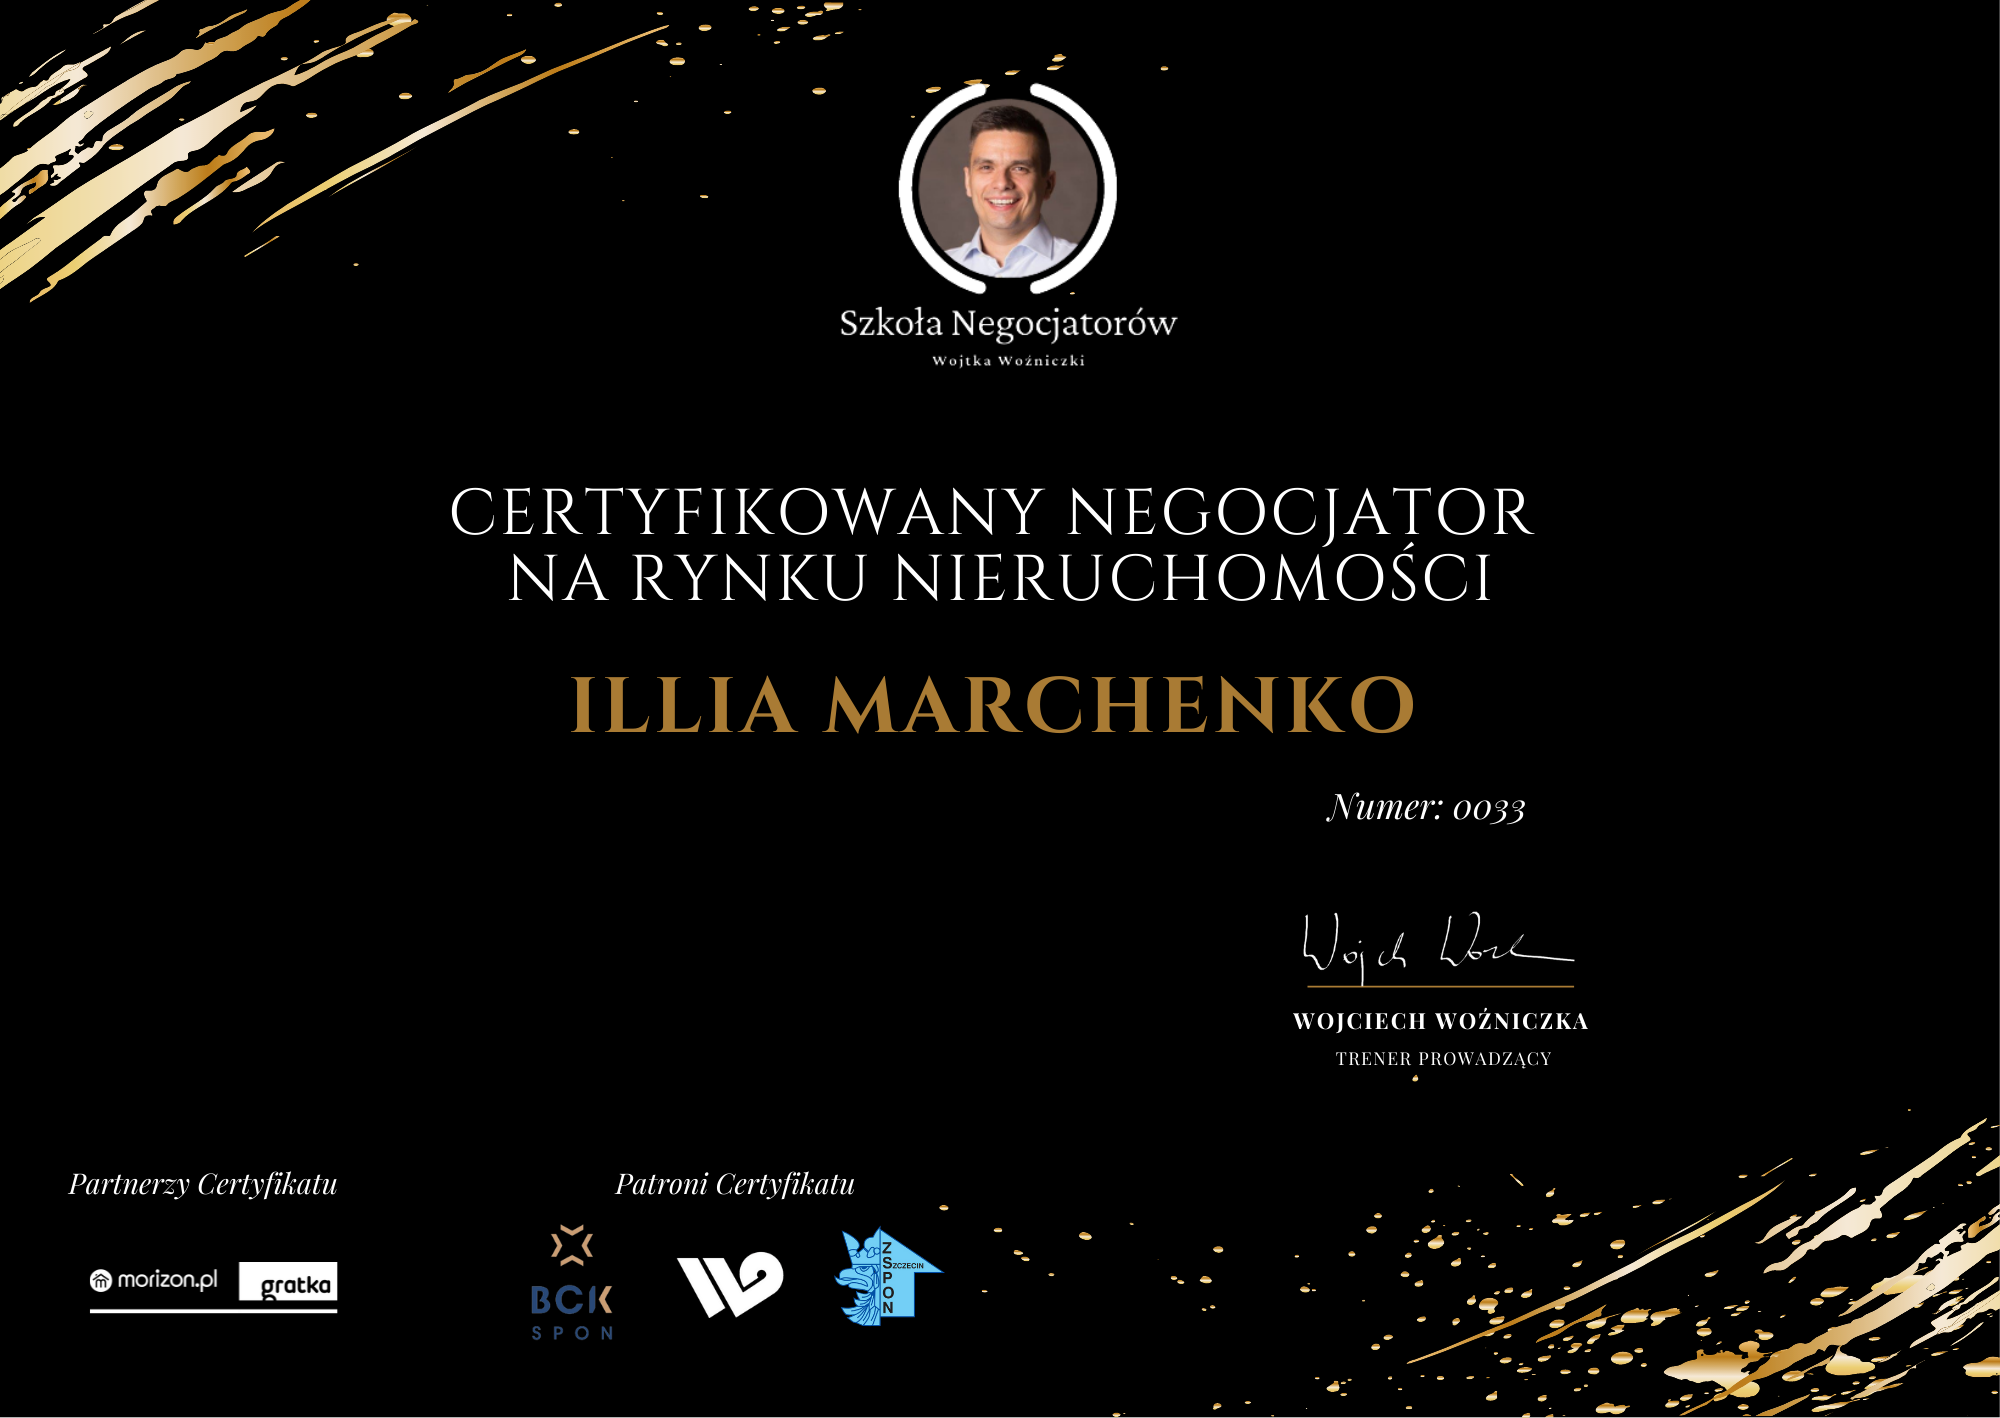 Illia Marchenko - Certyfikowany Negocjator na Rynku Nieruchomości